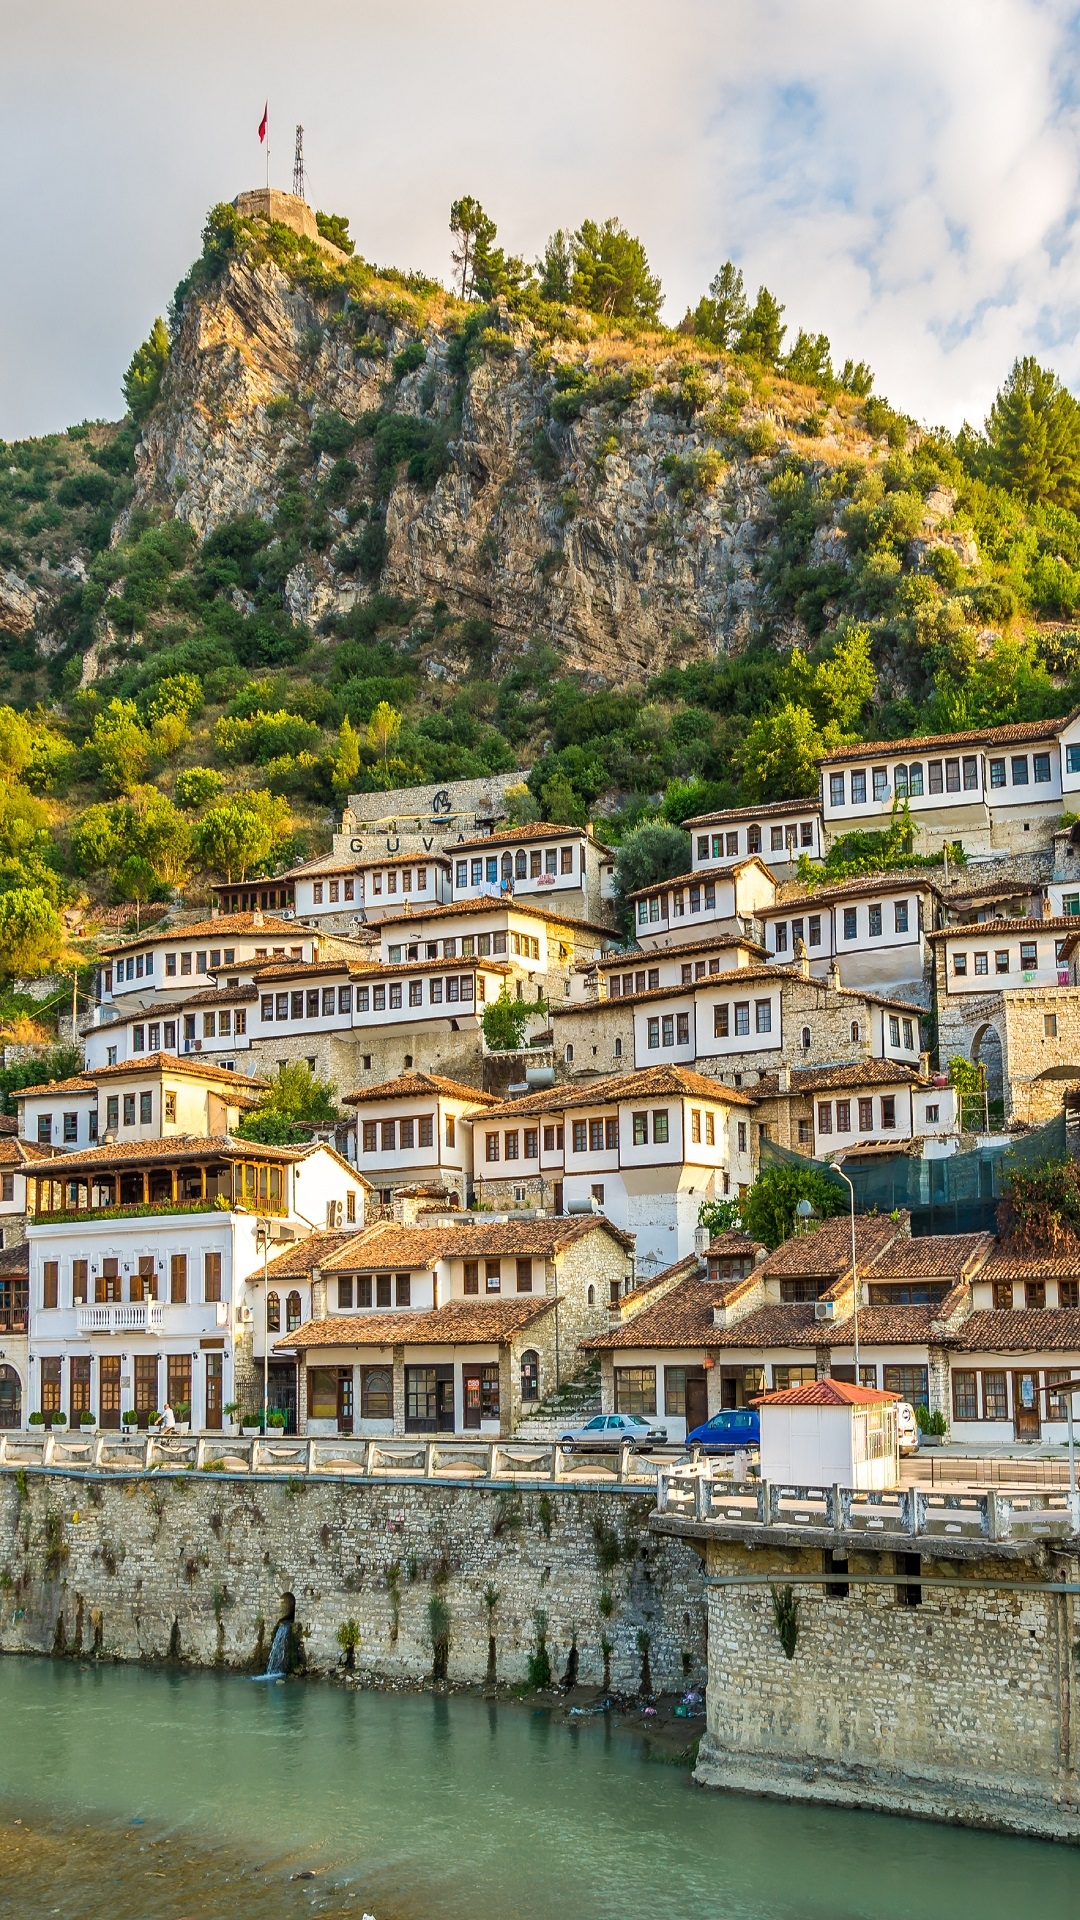 Berat City Albania for Apple iPhone 6S & 7 Plus resolution